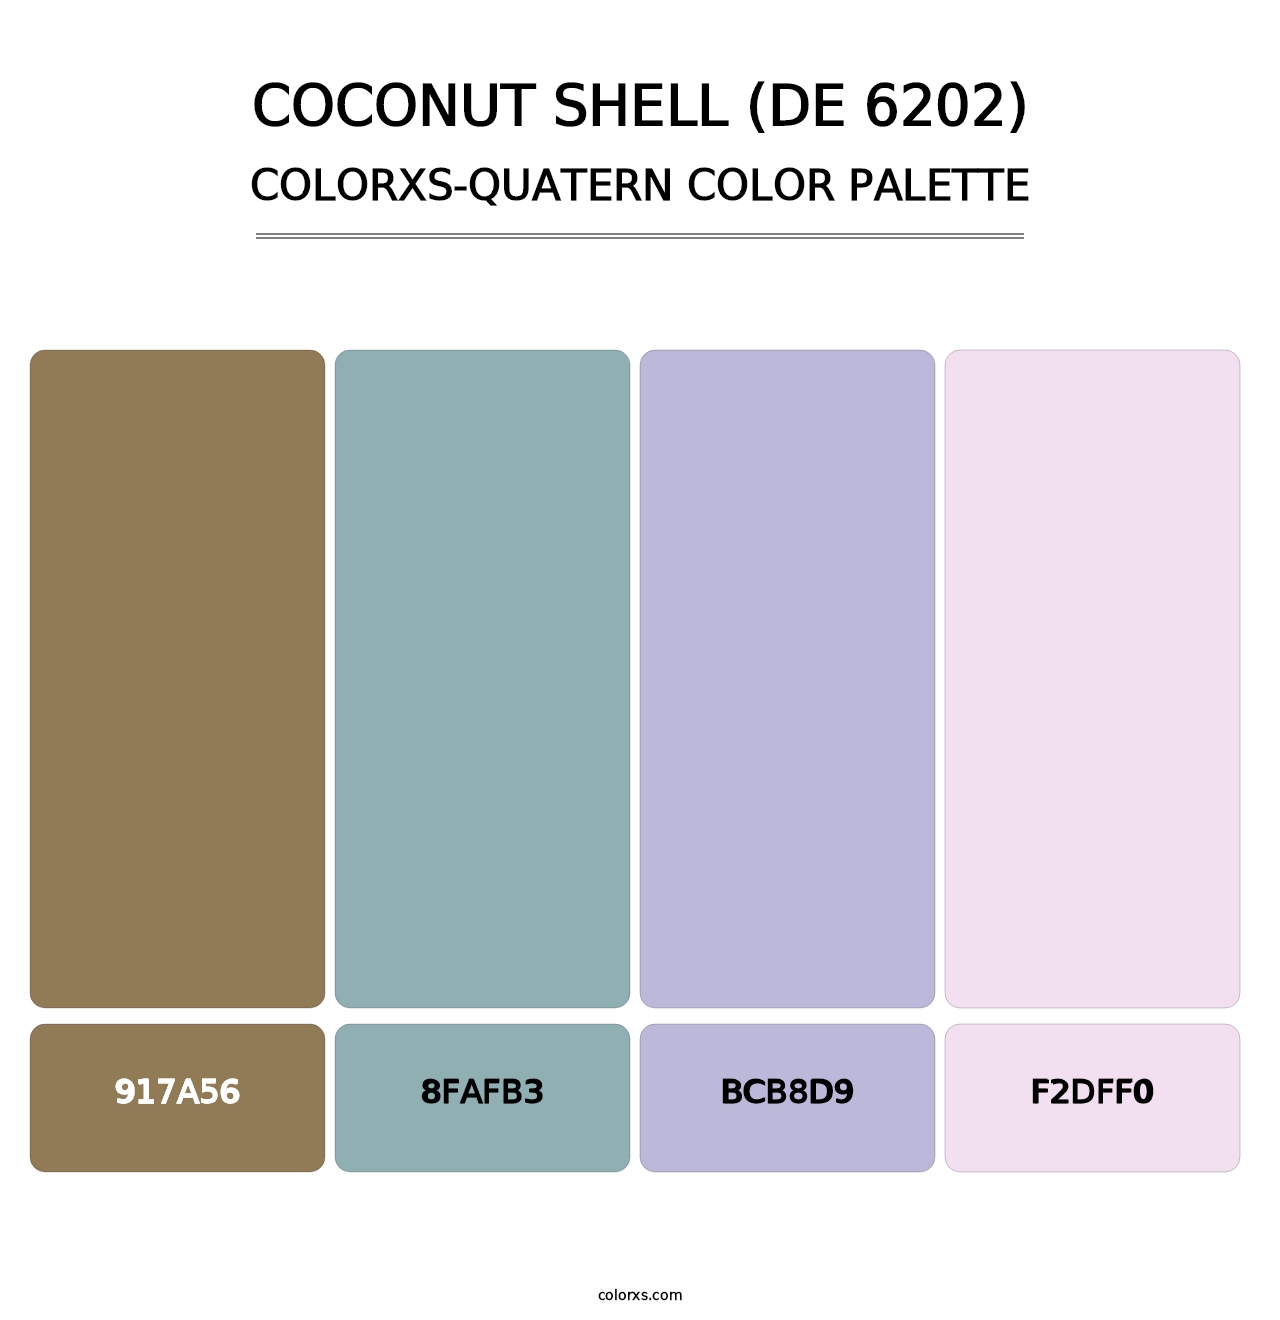 Coconut Shell (DE 6202) - Colorxs Quatern Palette